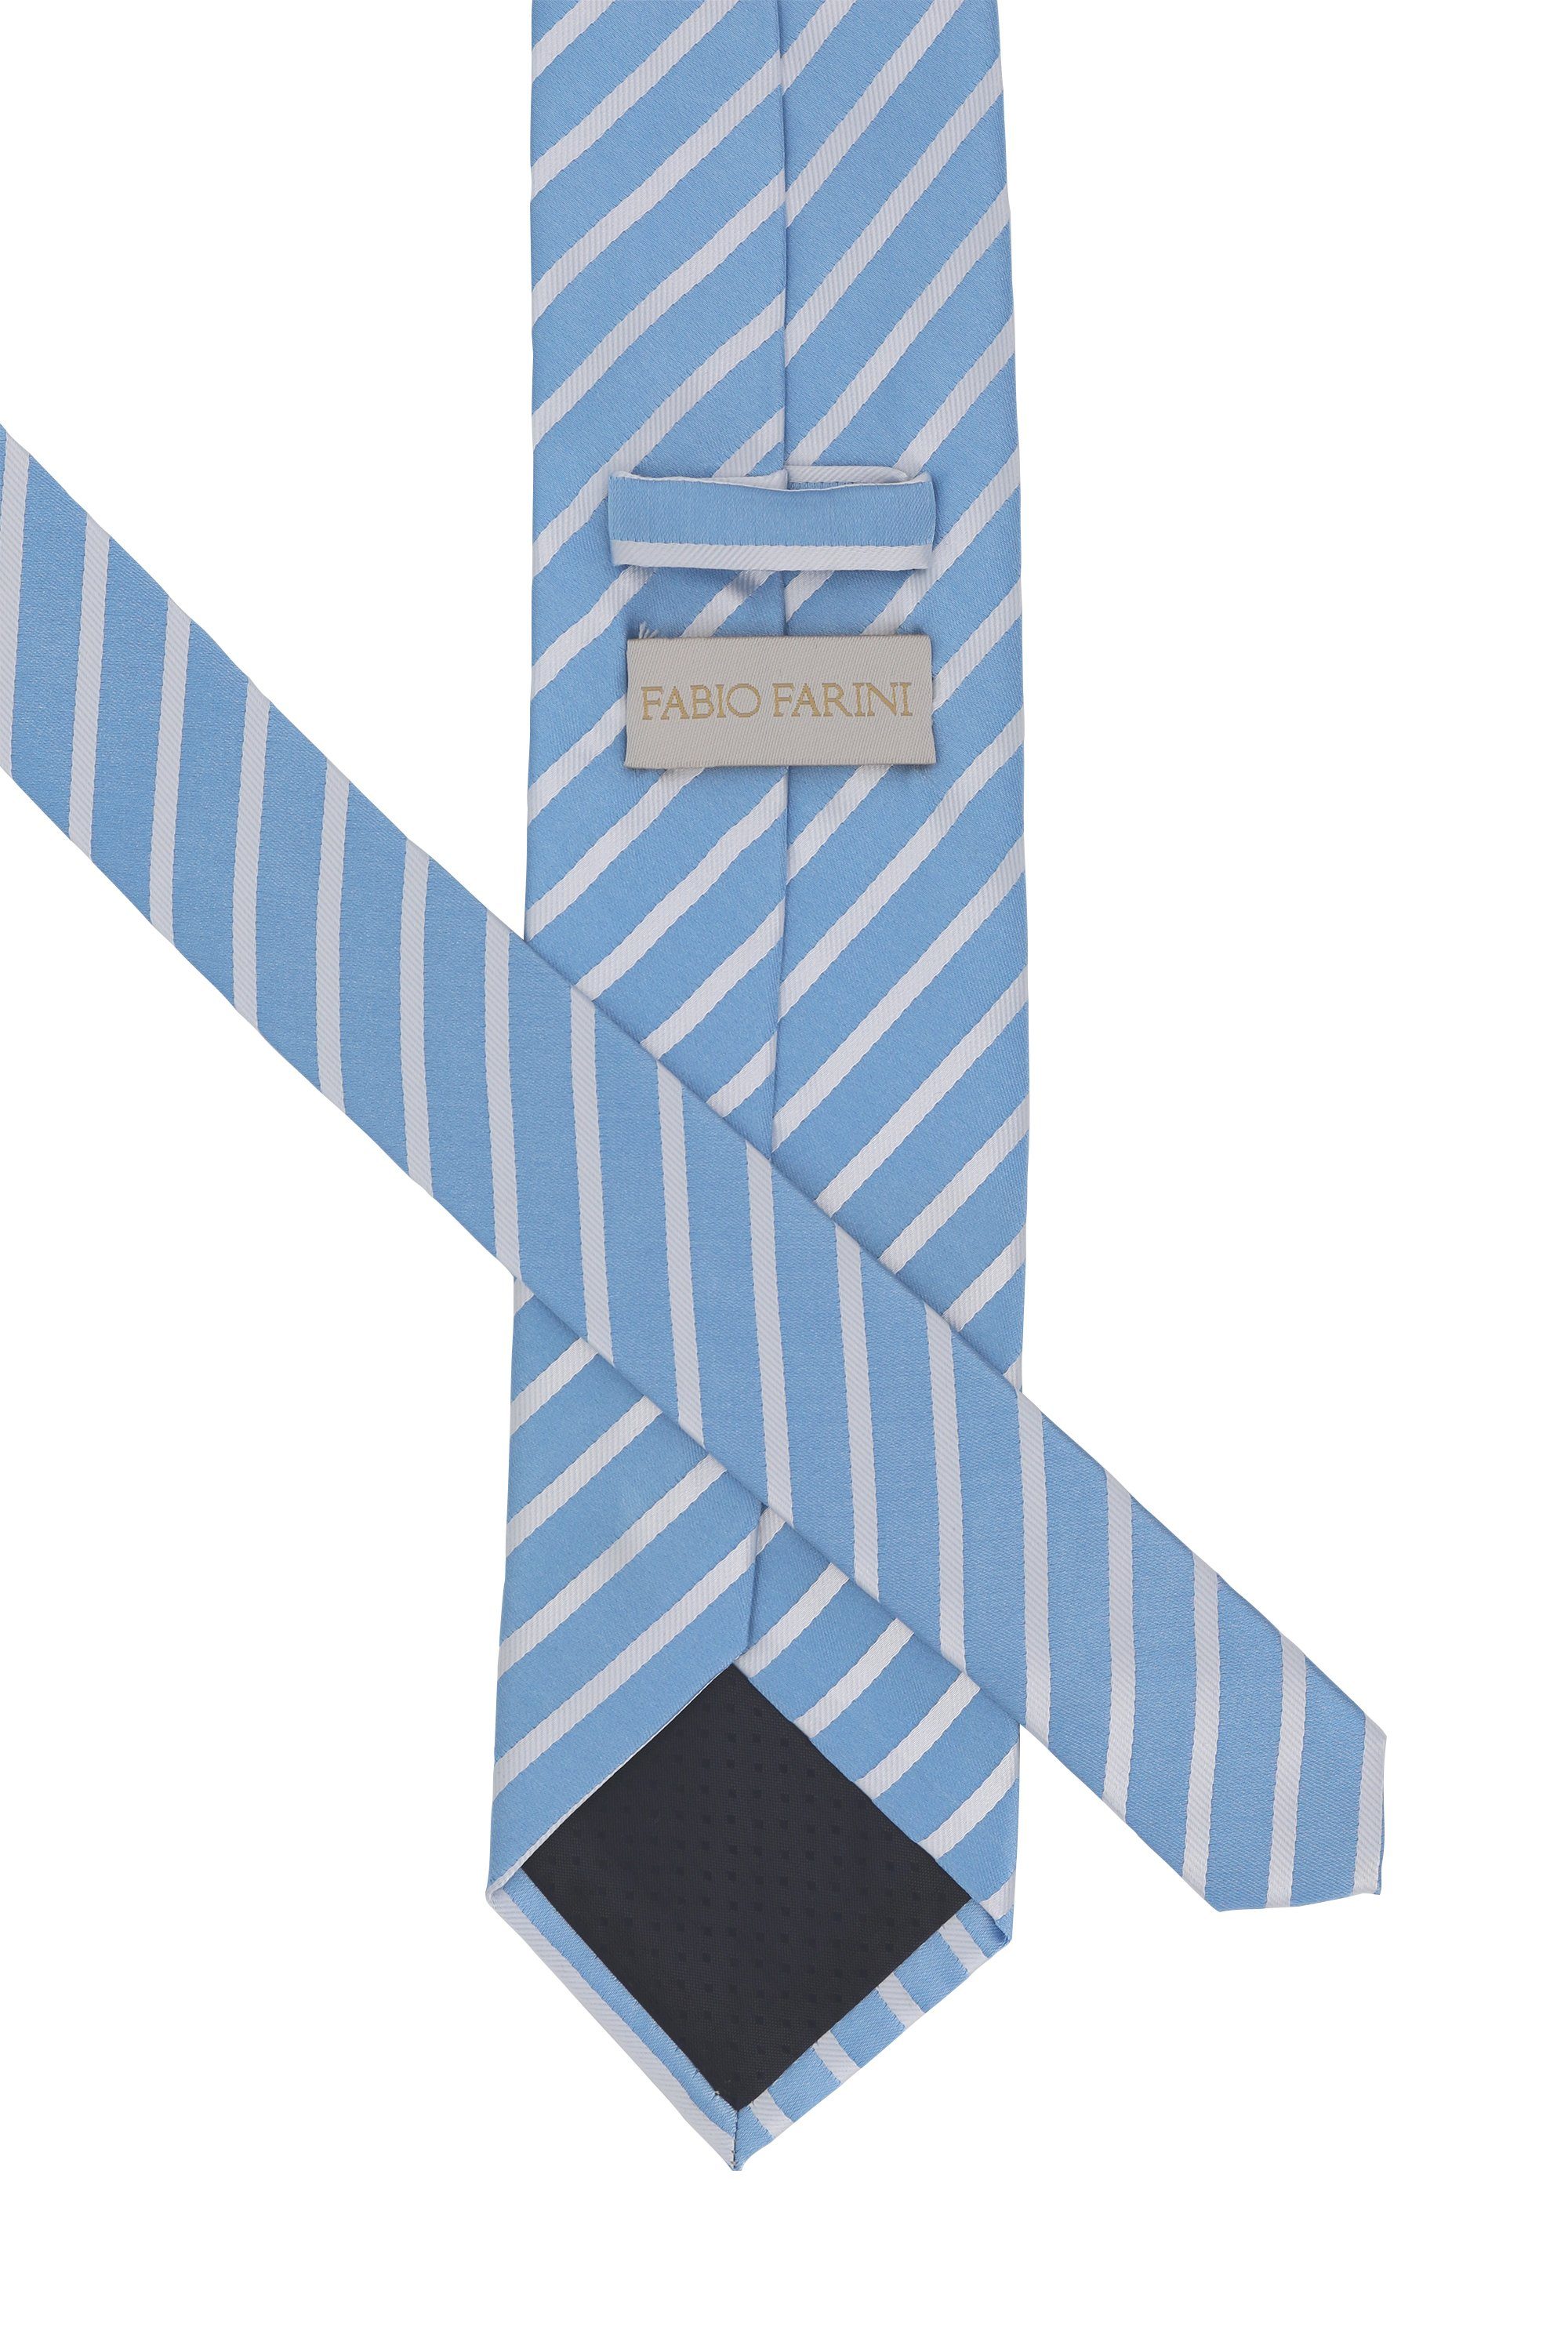 Blue/Eastern (8cm), Blau Herren - Farini Blaue Fabio Box, in Krawatte verschiedene Sky 8cm Weiß Schlips Krawatte Swedish Breit - Streifen Männer Gestreift) Blautöne (ohne